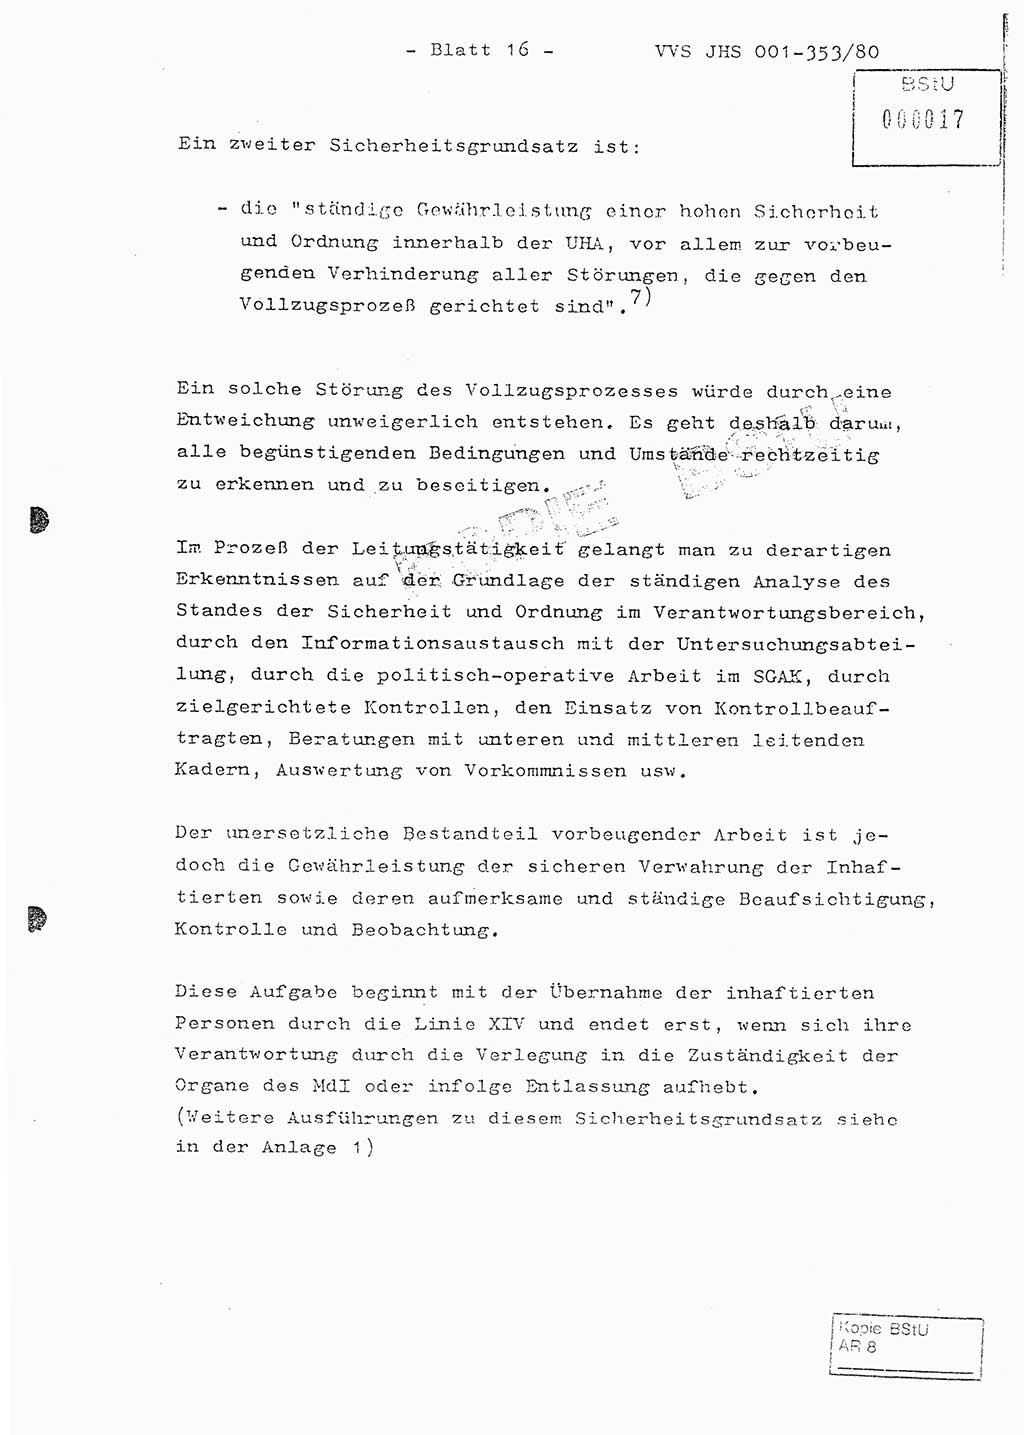 Diplomarbeit Hauptmann Joachim Klaumünzner (Abt. ⅩⅣ), Ministerium für Staatssicherheit (MfS) [Deutsche Demokratische Republik (DDR)], Juristische Hochschule (JHS), Vertrauliche Verschlußsache (VVS) o001-353/80, Potsdam 1980, Blatt 16 (Dipl.-Arb. MfS DDR JHS VVS o001-353/80 1980, Bl. 16)